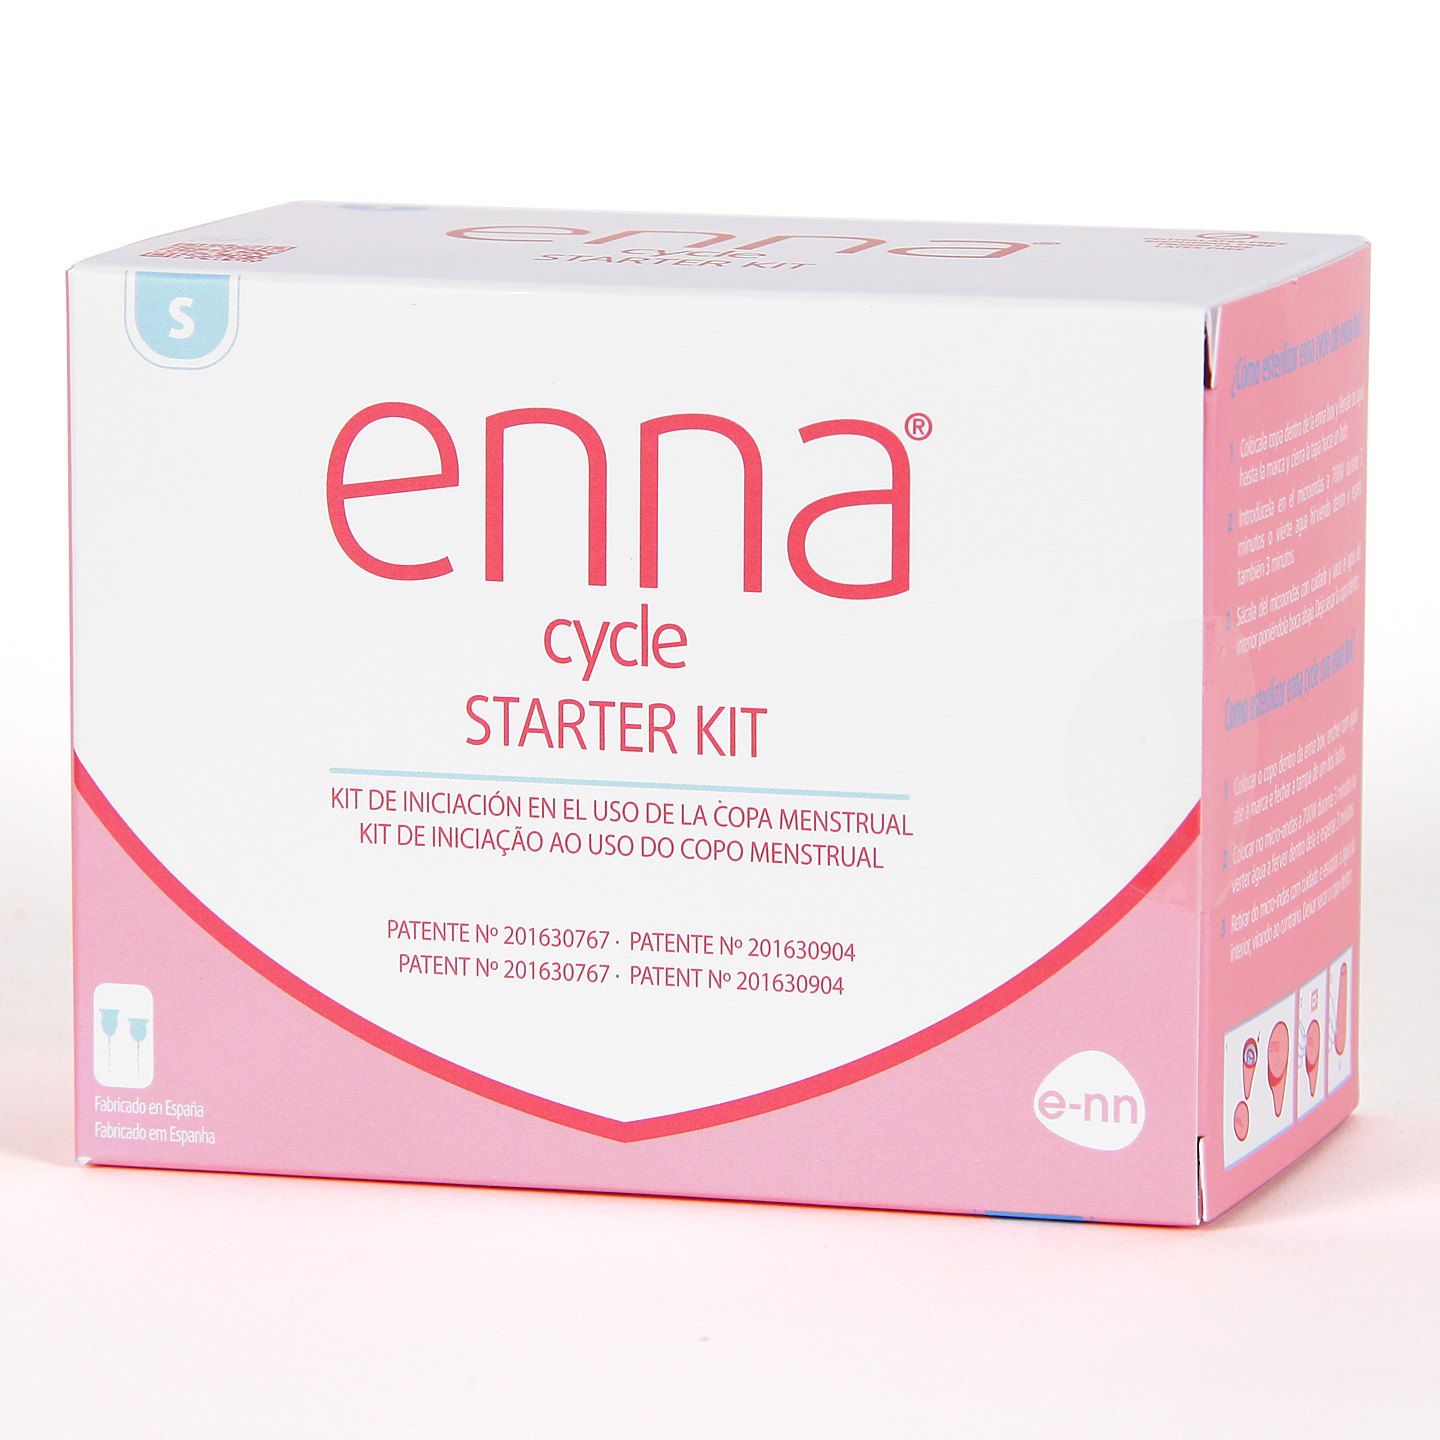 Enna Cycle Starter kit pack